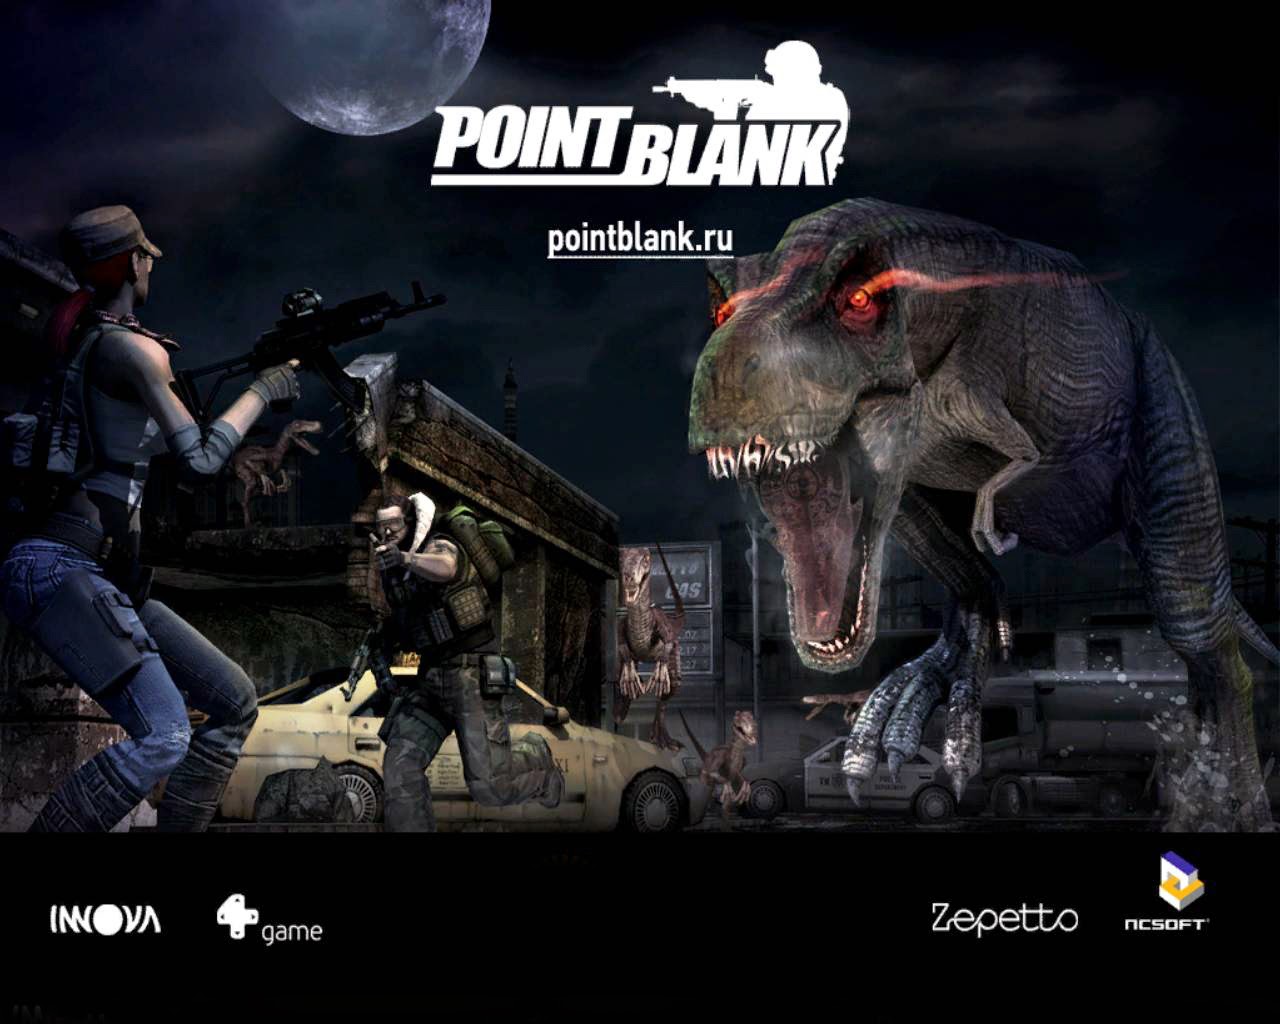 punto en blanco fondos de pantalla hd,juego de acción y aventura,juego de pc,juegos,dinosaurio,película